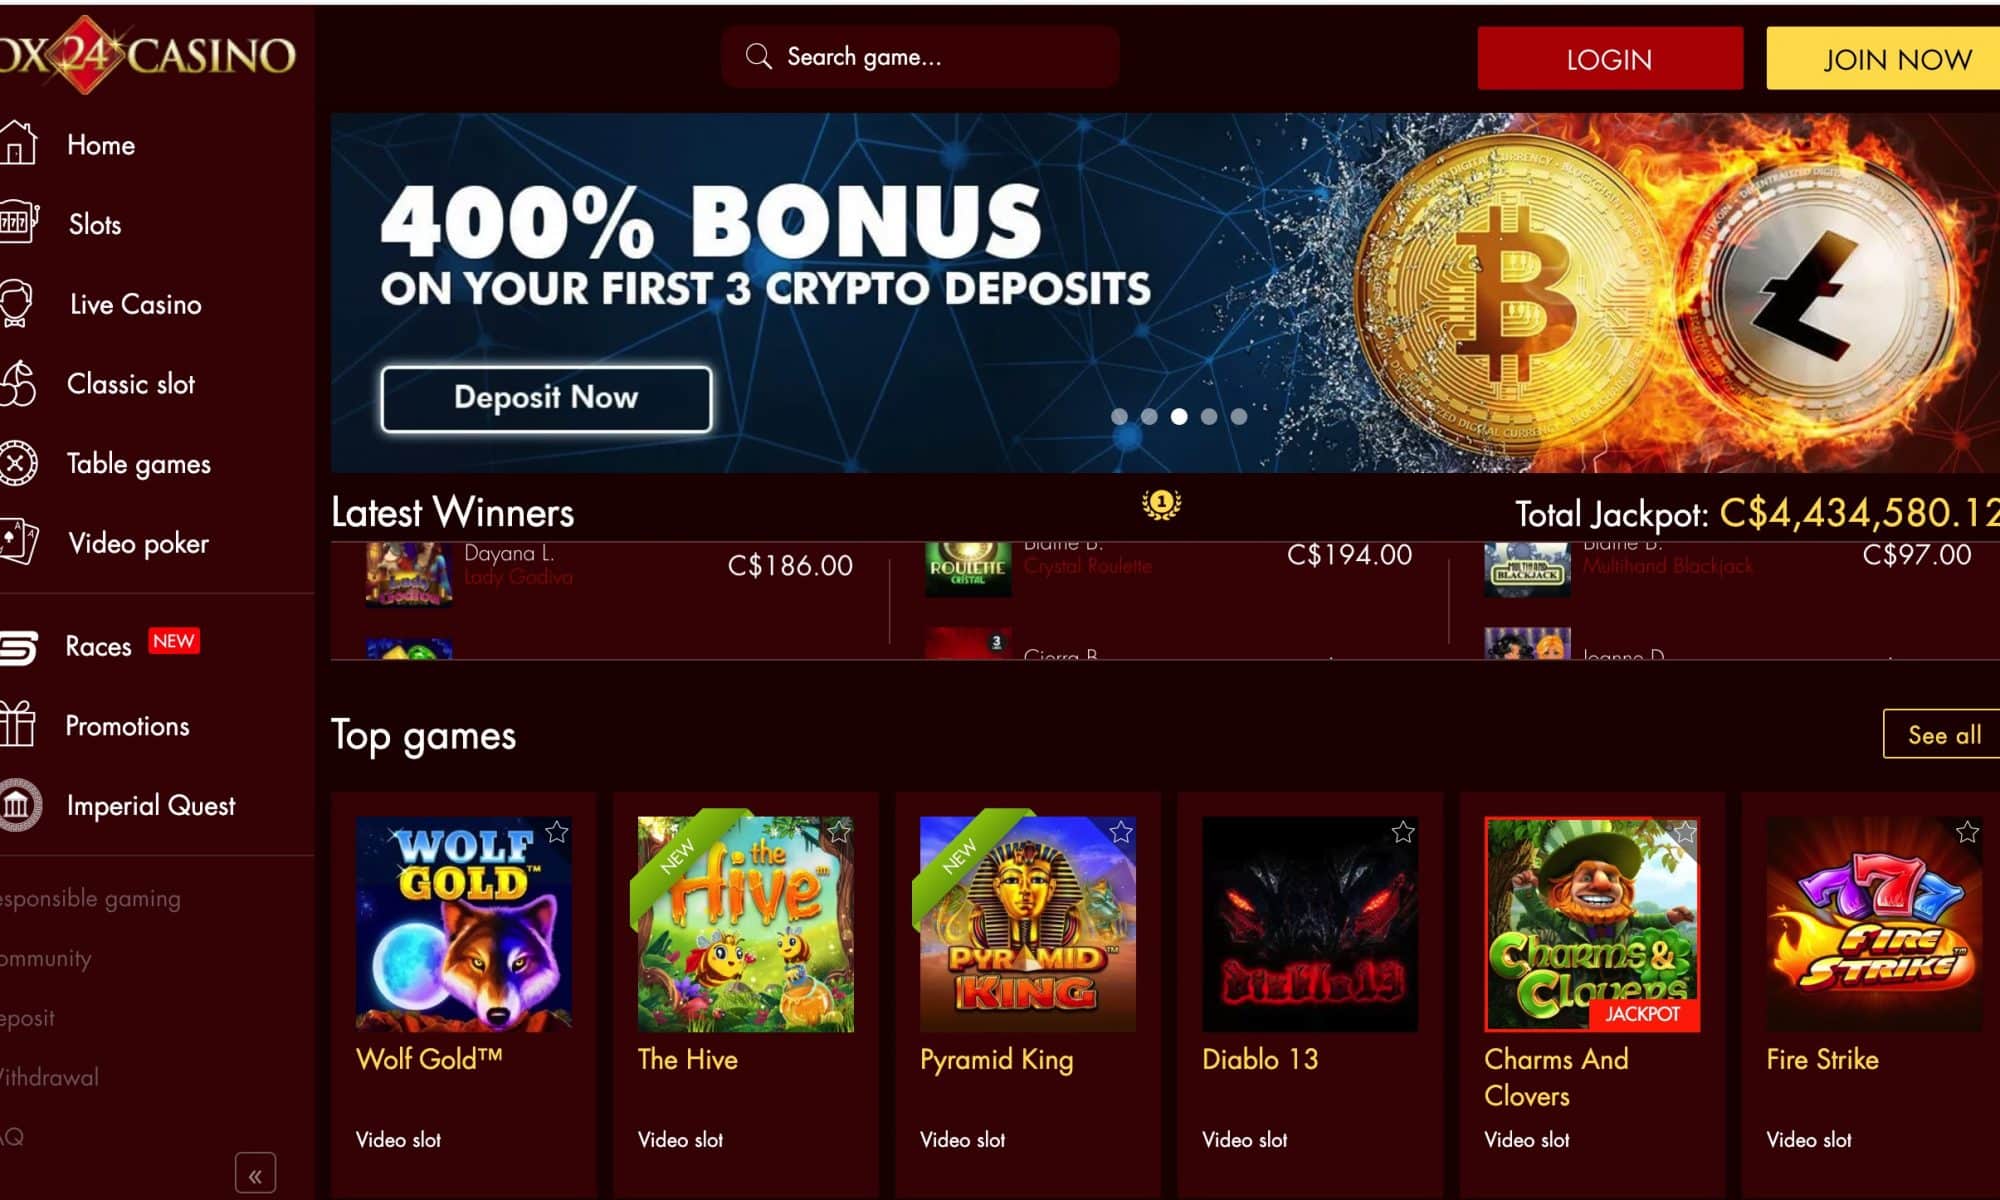 Box24 Casino - Get 135 spins plus 1150% match bonus